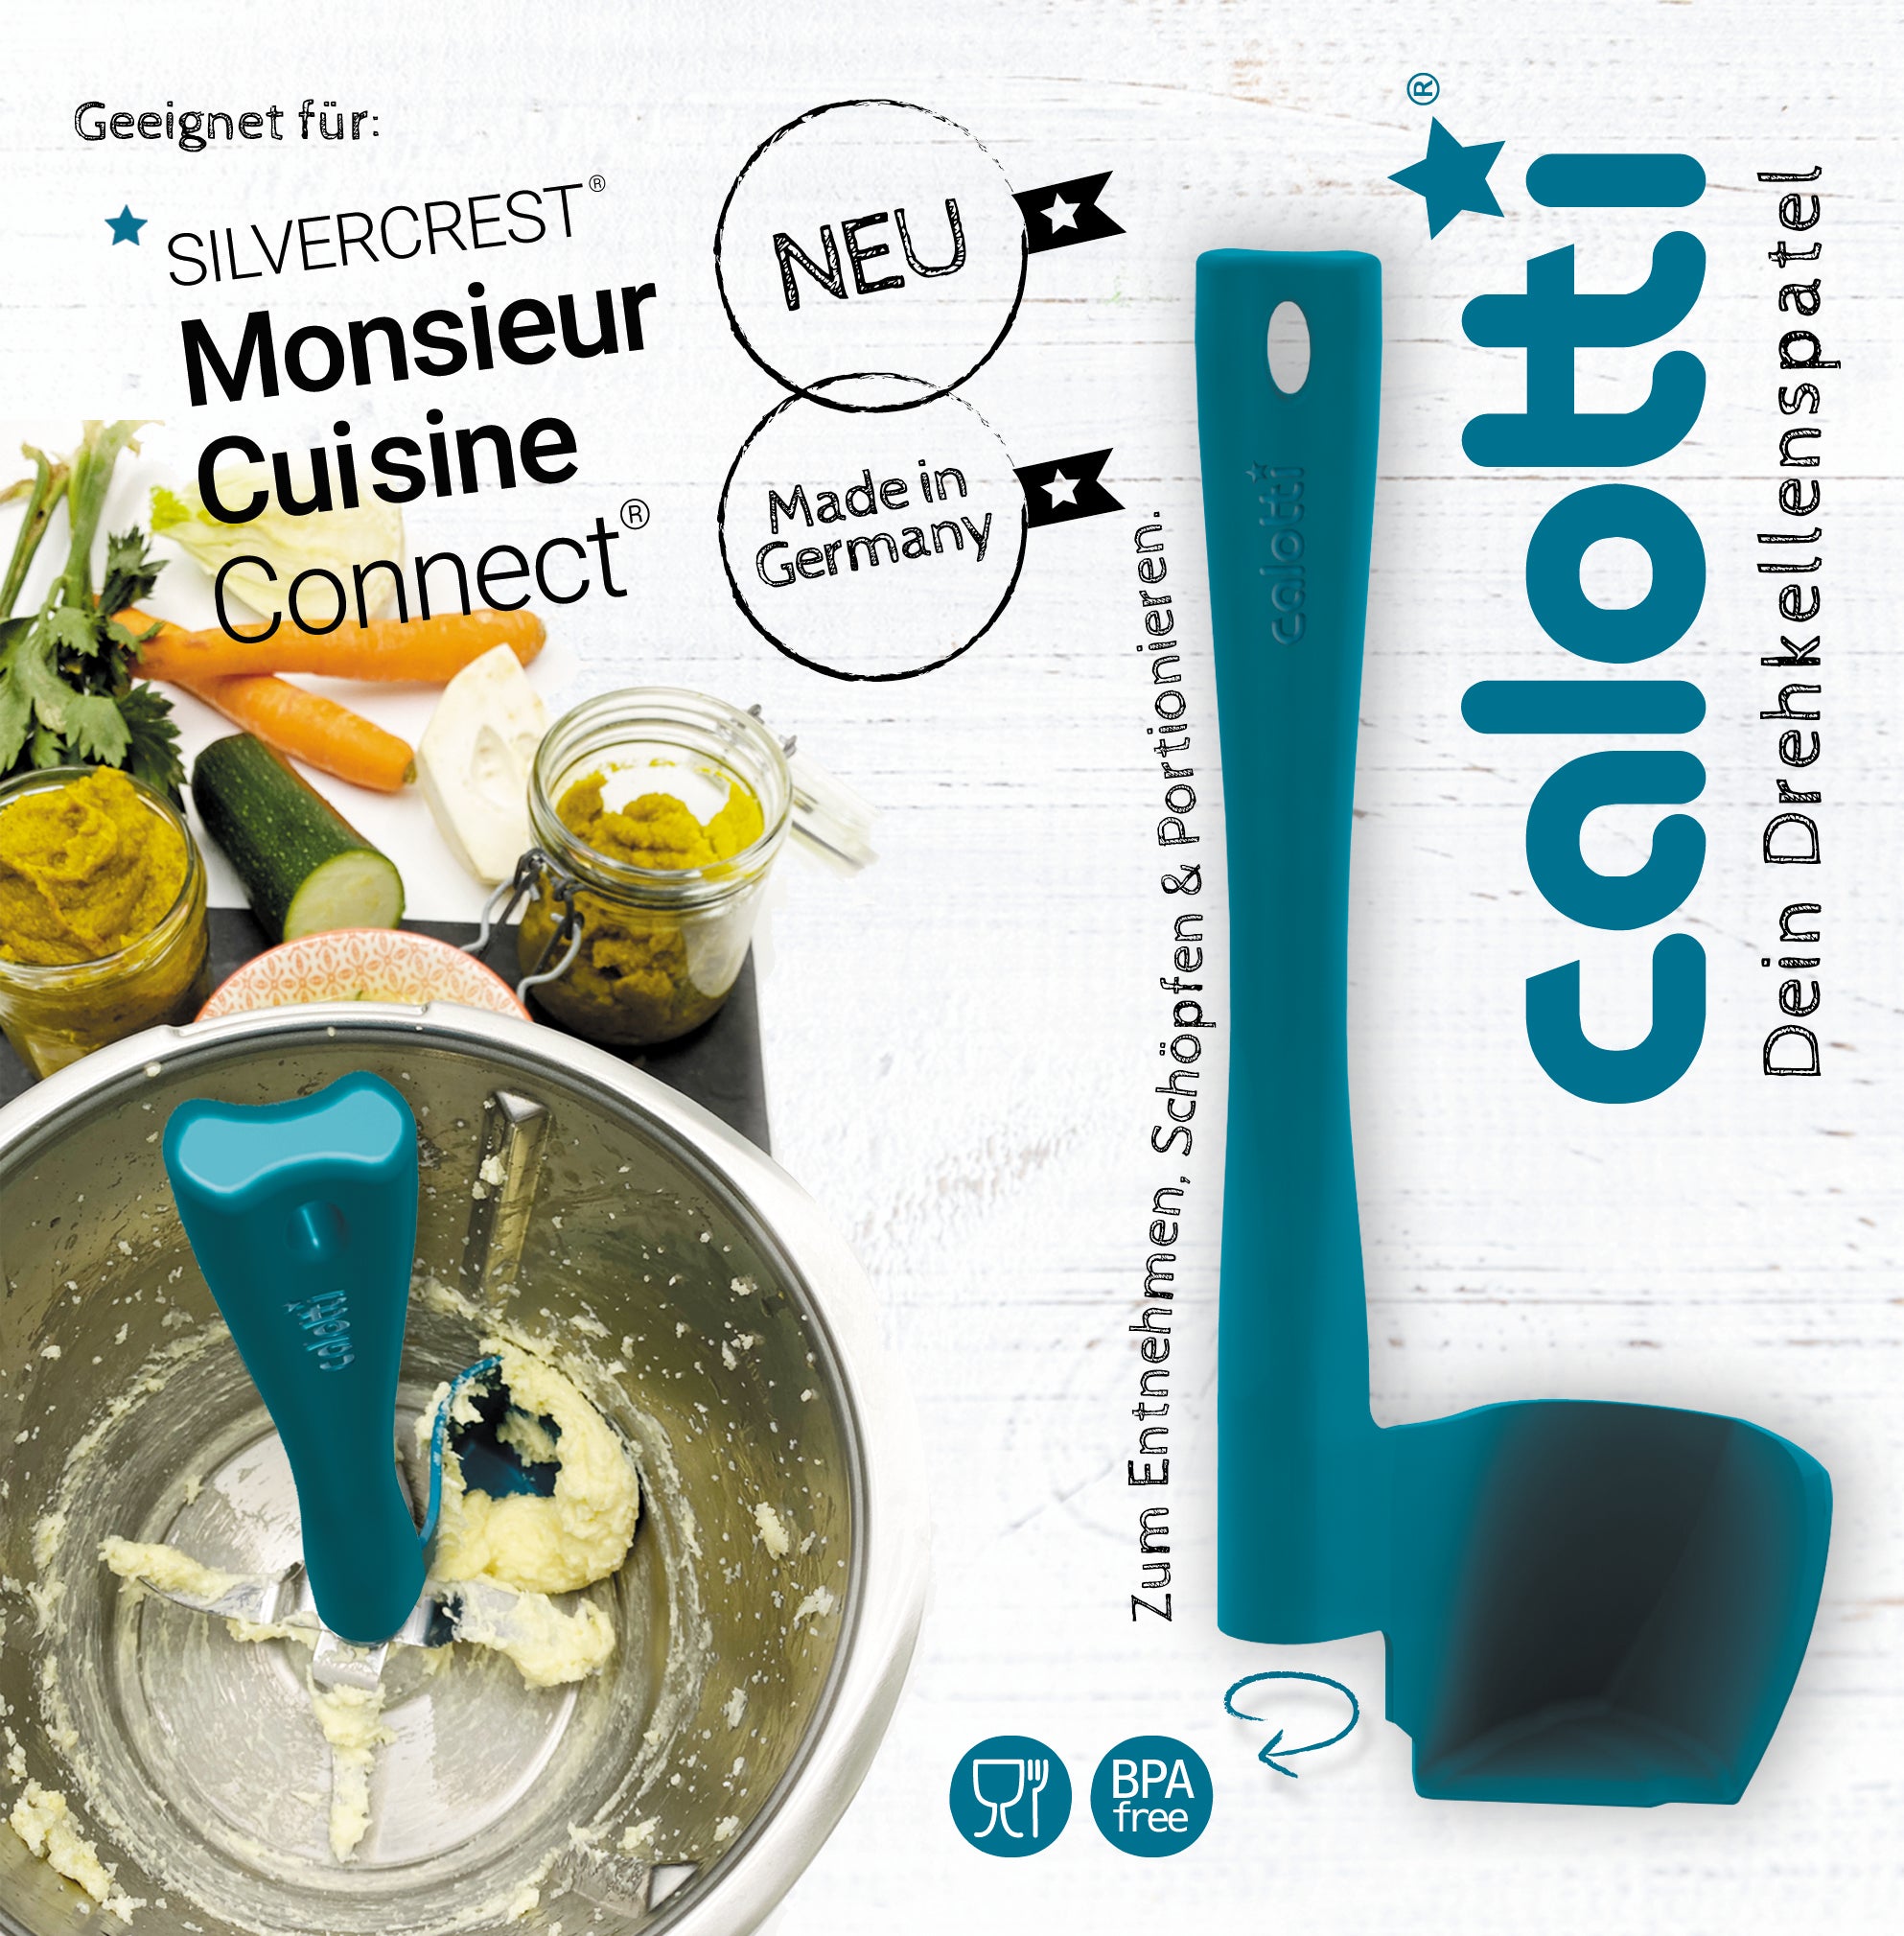 Calotti® Drehkellenspatel für Monsieur Cuisine Connect, Trend, Smart